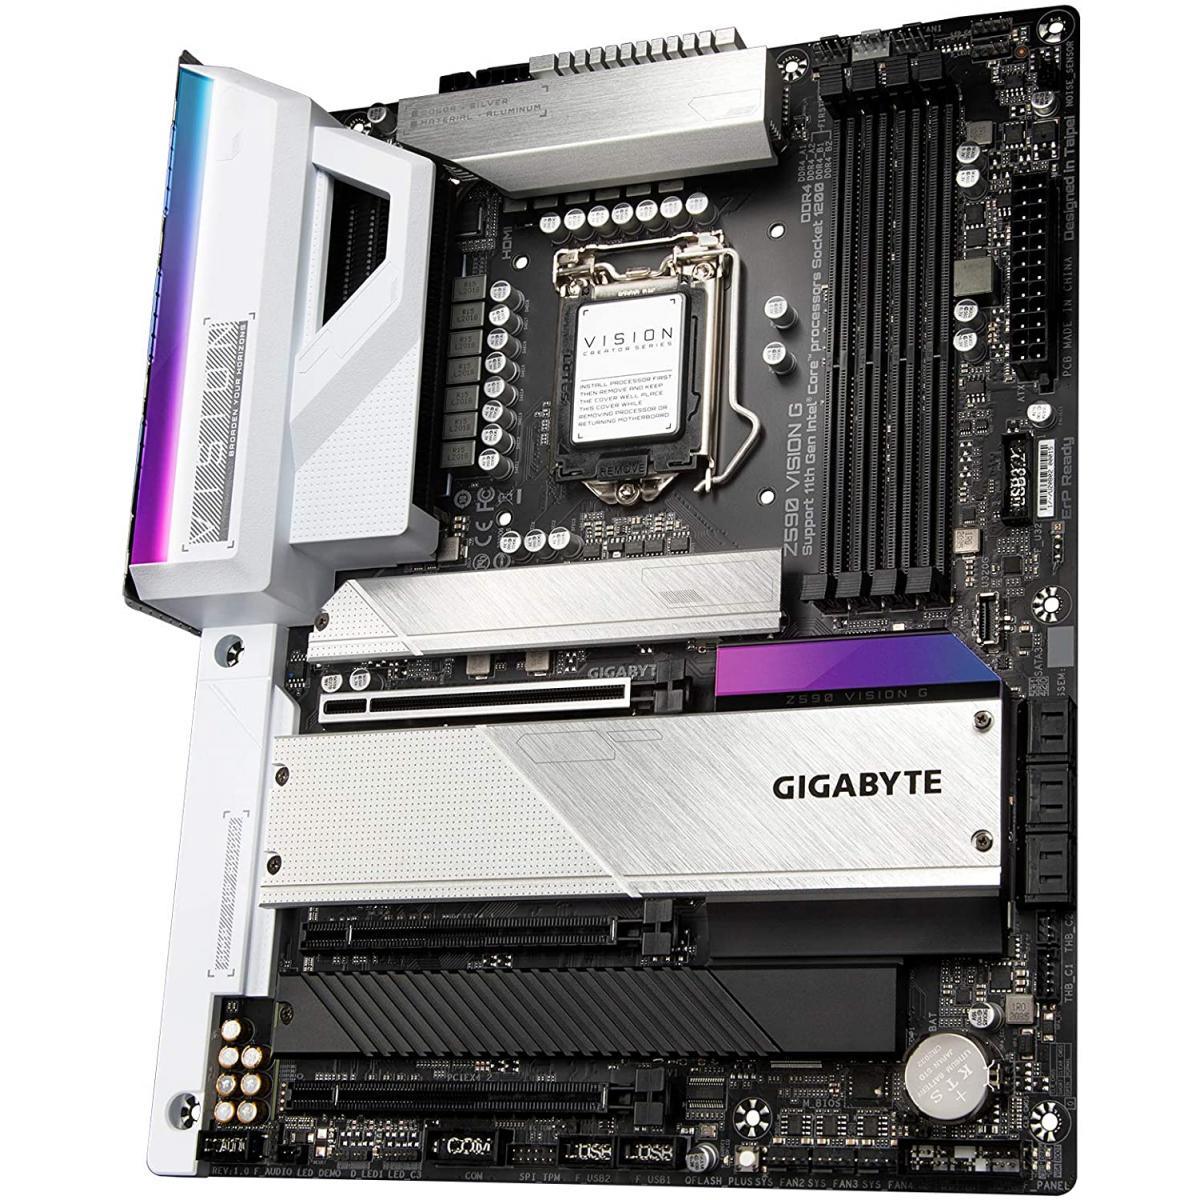 GIGABYTE MOTHERBOARD GIGABYTE Motherboard Z590 Vision G LGA 1200/ATX/3x M.2/PCIe 4.0/USB 3.2 Gen2X2 Type-C/2.5GbE LAN